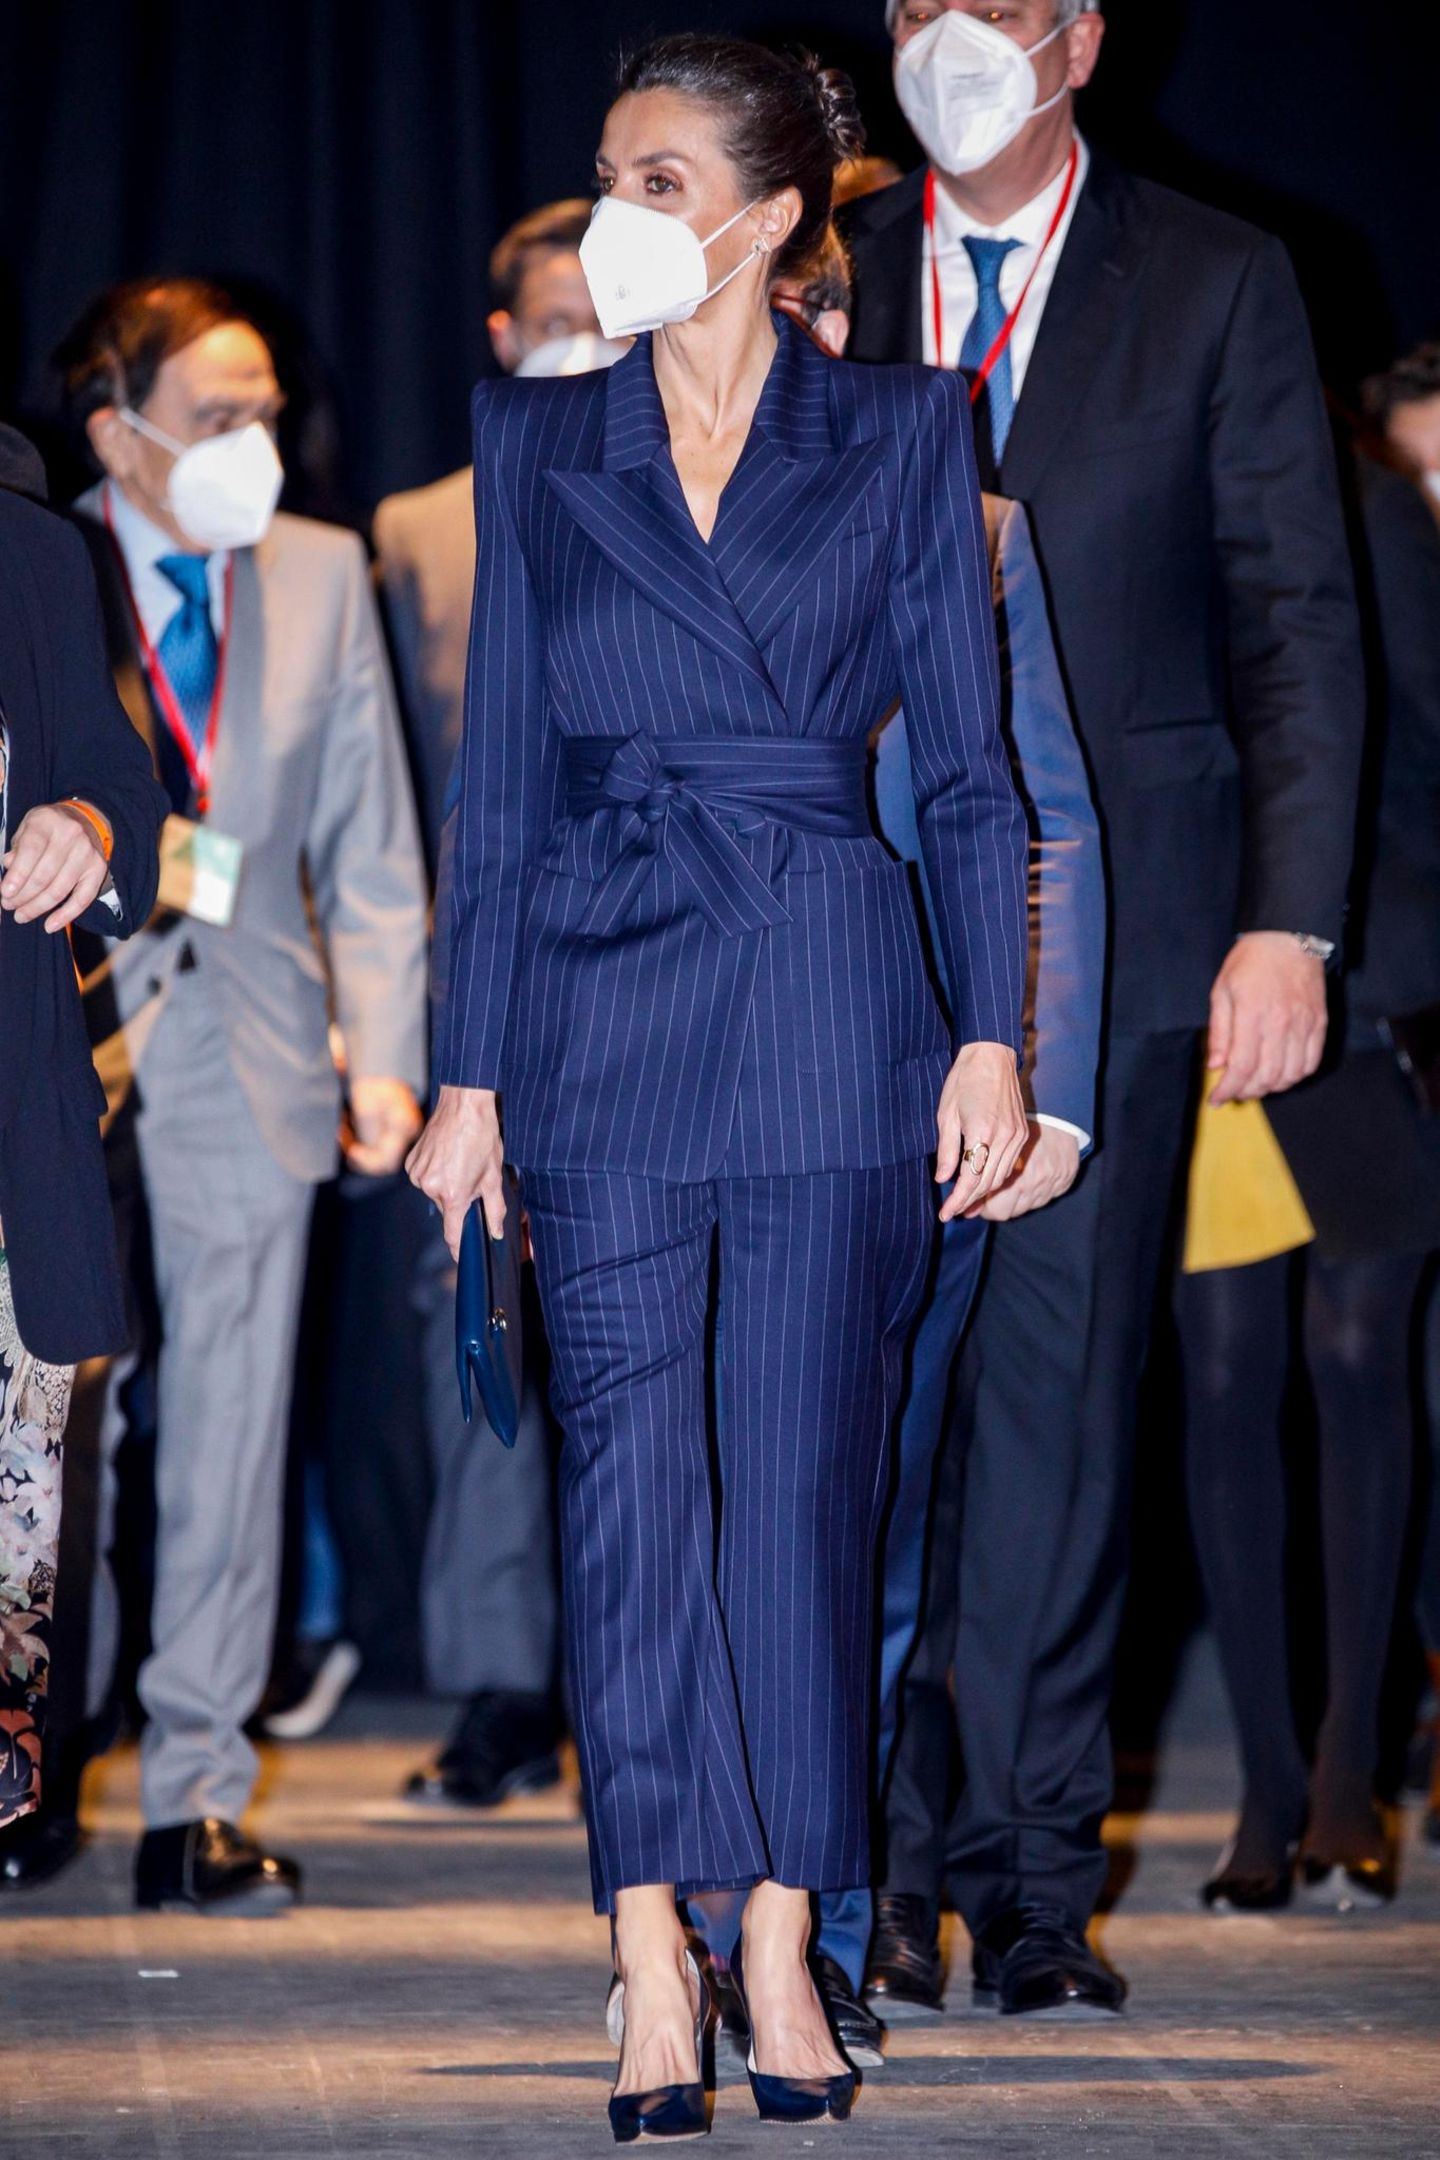 Königin Letizia von Spanien beweist mal wieder ihr Gespür für stilvolle Modetrends. Für die Eröffnung der 41. Internationalen Messe für zeitgenössische Kunst setzt die 49-Jährige auf einen klassischen nachtblauen Hosenanzug mit Nadelstreifen. Der integrierte Wickelgürtel, der ihre schmale Taille optimal betont, macht das schlichte Outfit jedoch zum absoluten Blickfang. Bei Accessoires und Schmuck bleibt Letizia minimalistisch und wählt eine Clutch, ebenfalls in Dunkelblau, sowie kleine Brillanten-Ohrstecker.